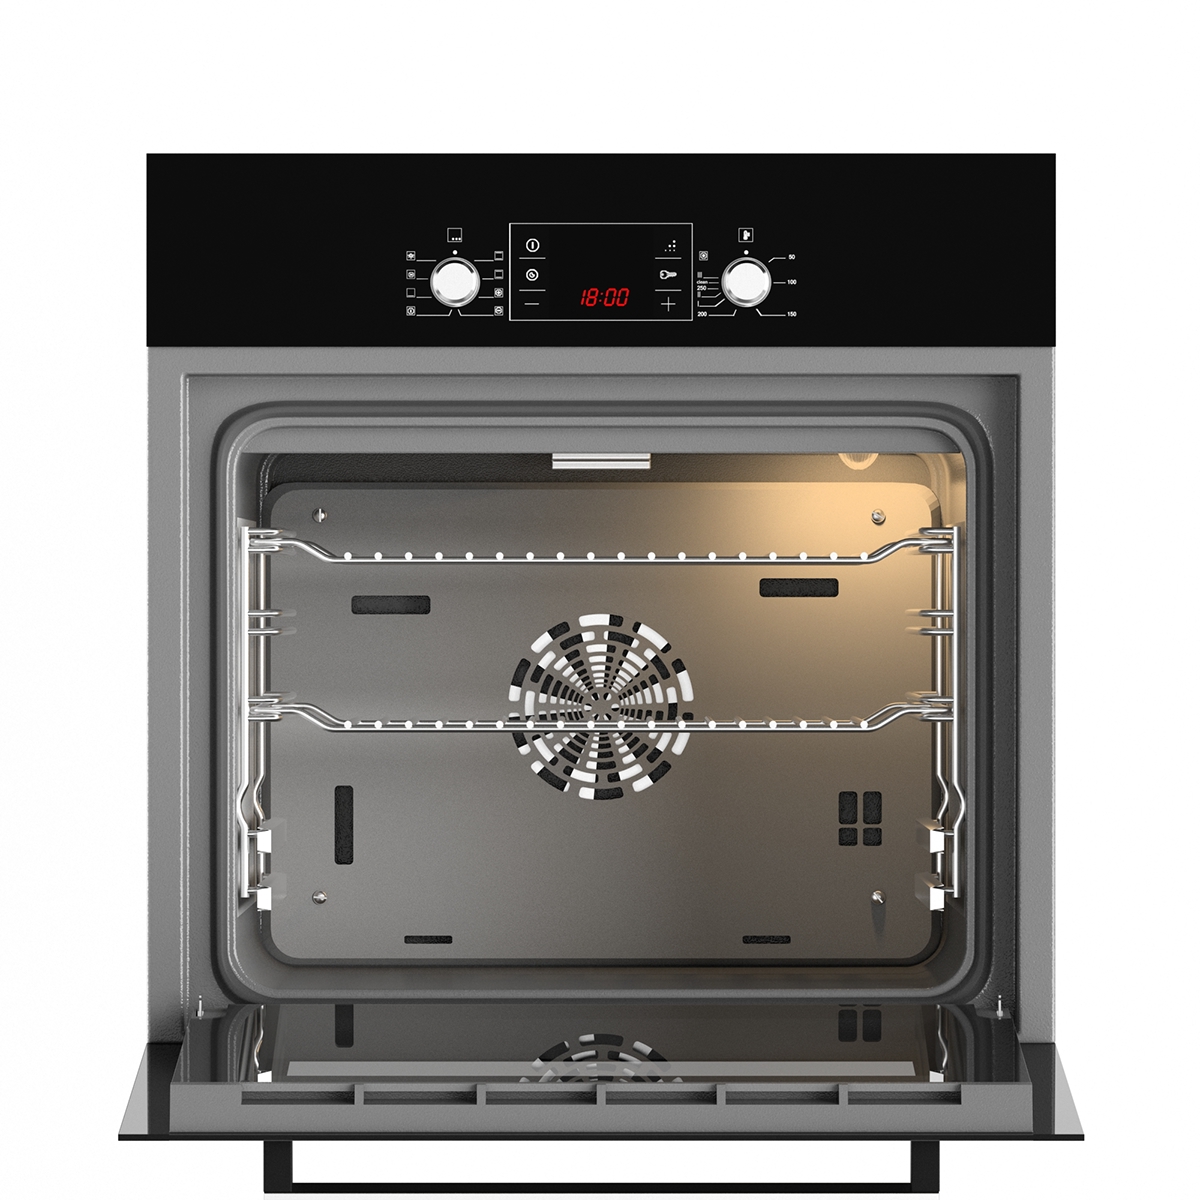 3dsmax vray Bosch black kitchen built-in CGI Render